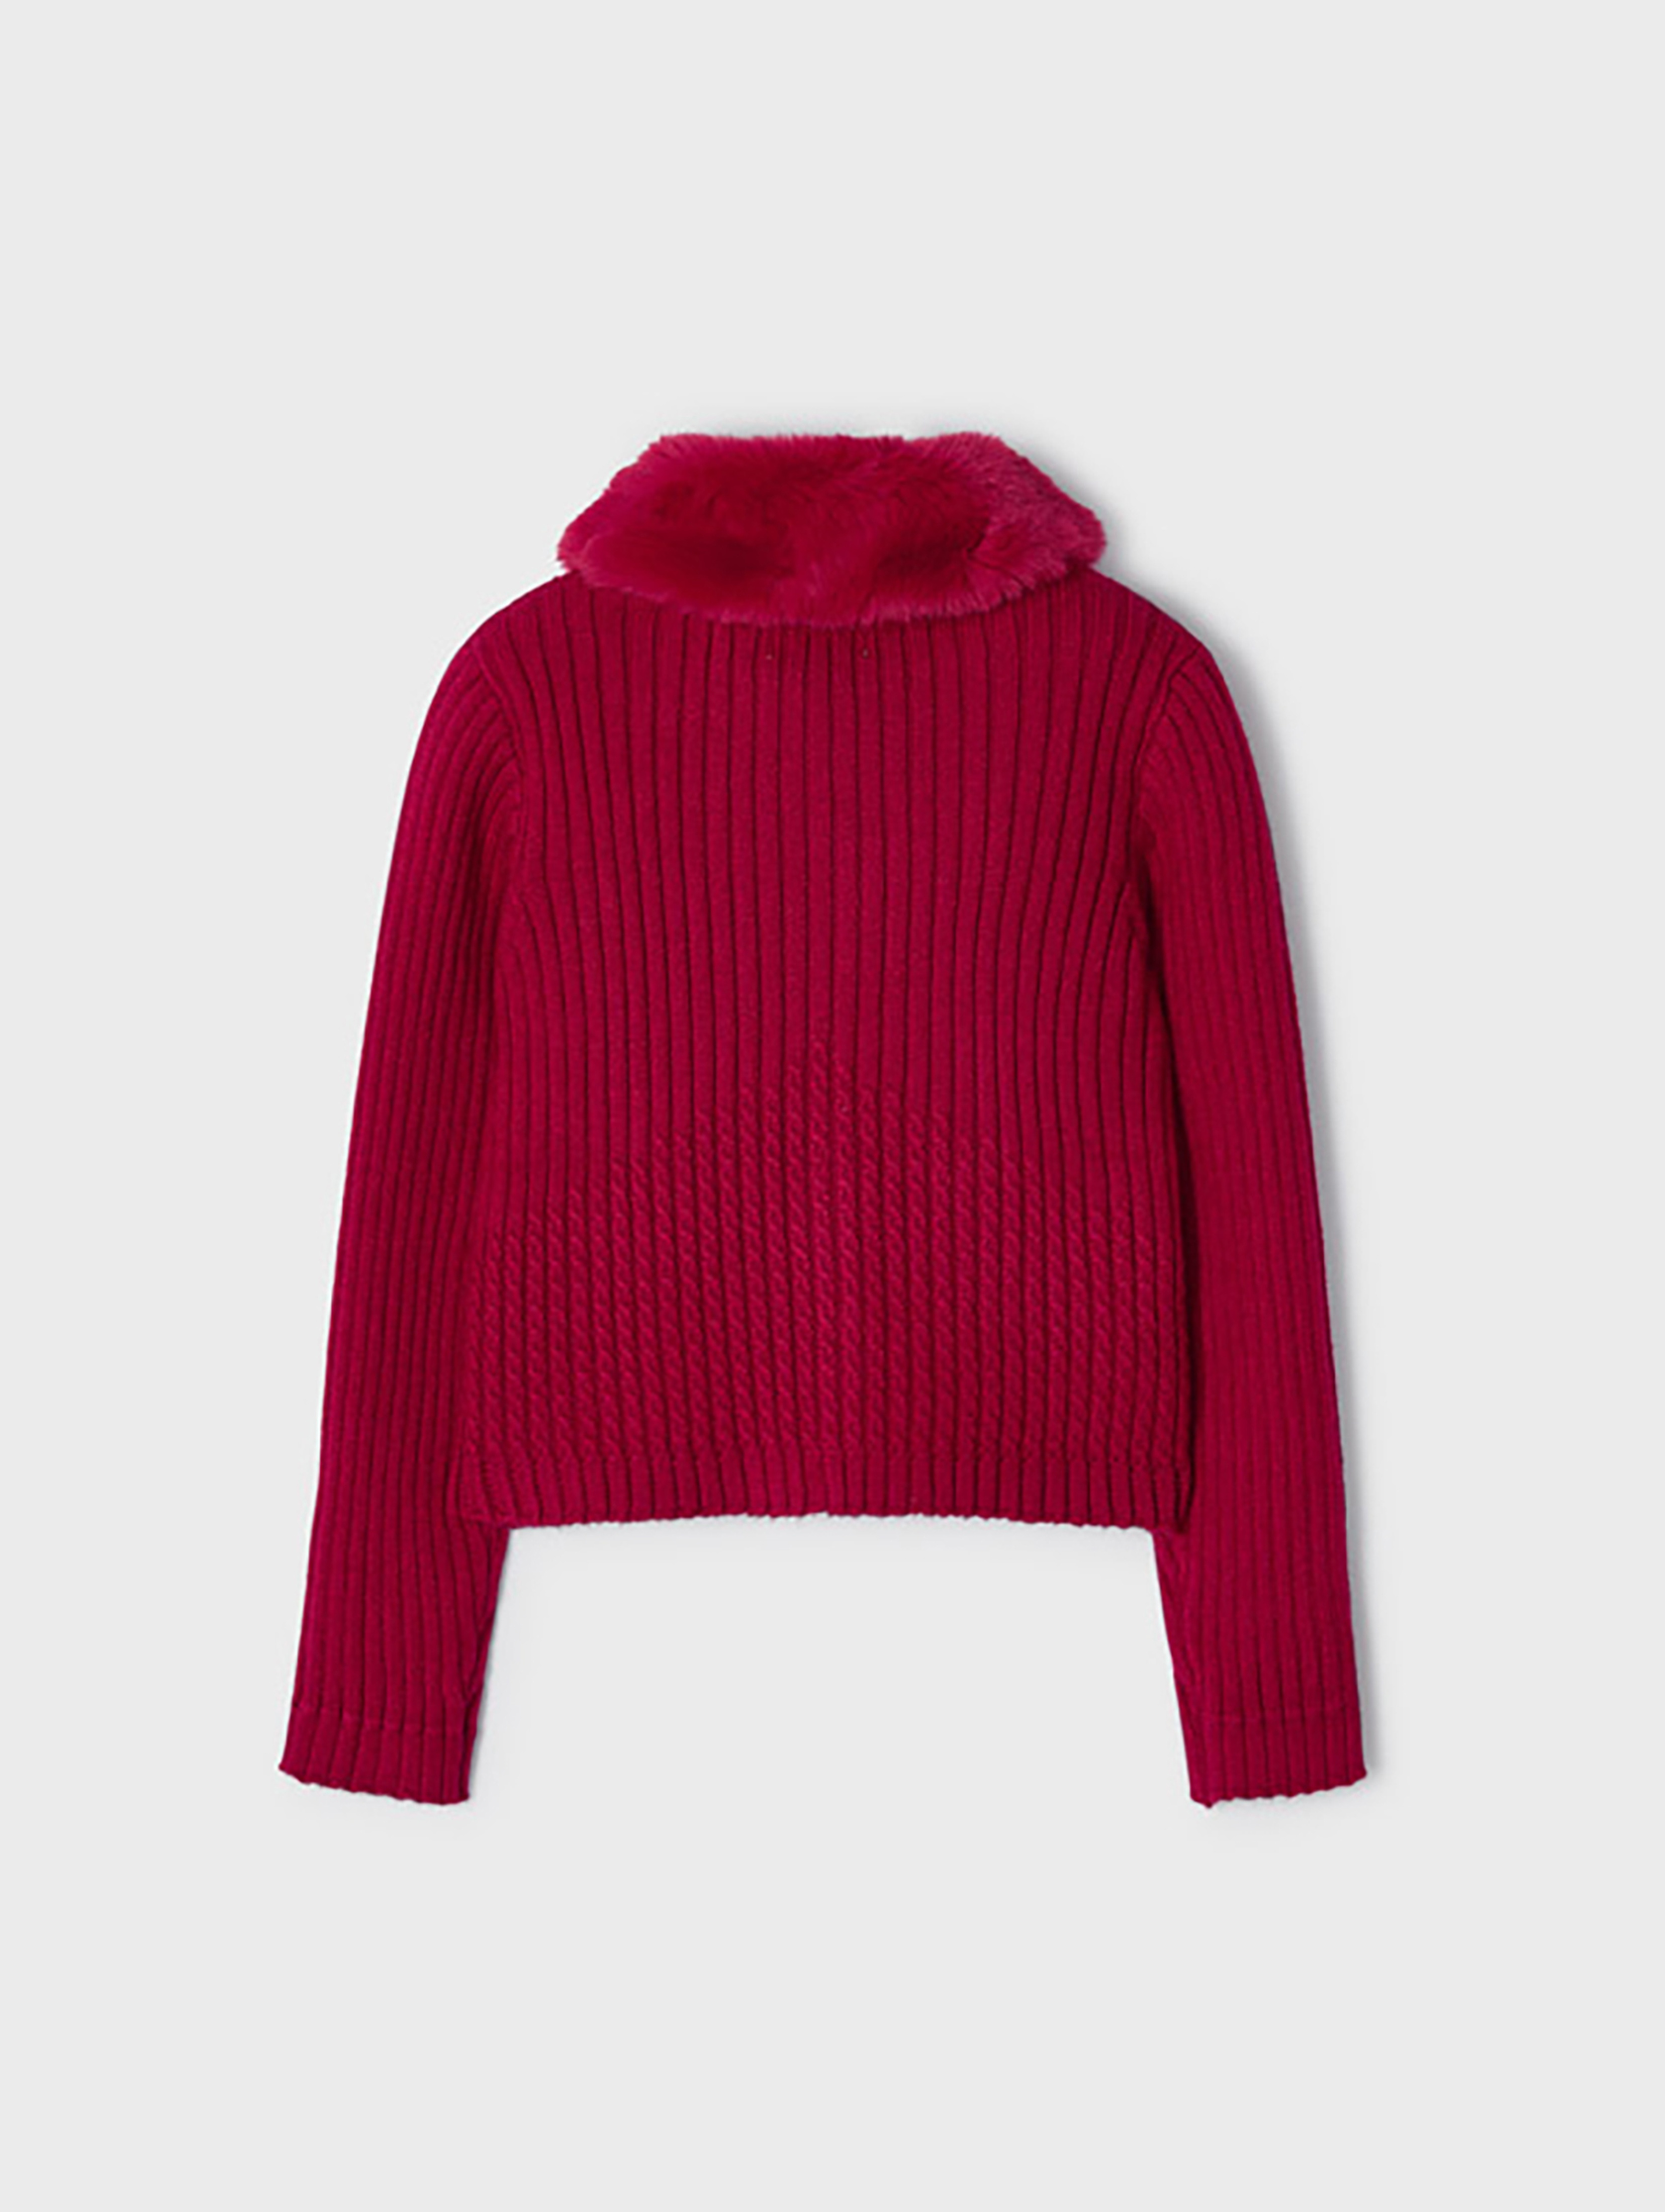 Sweter dziewczęcy z puchatym kołnierzem - czerwony